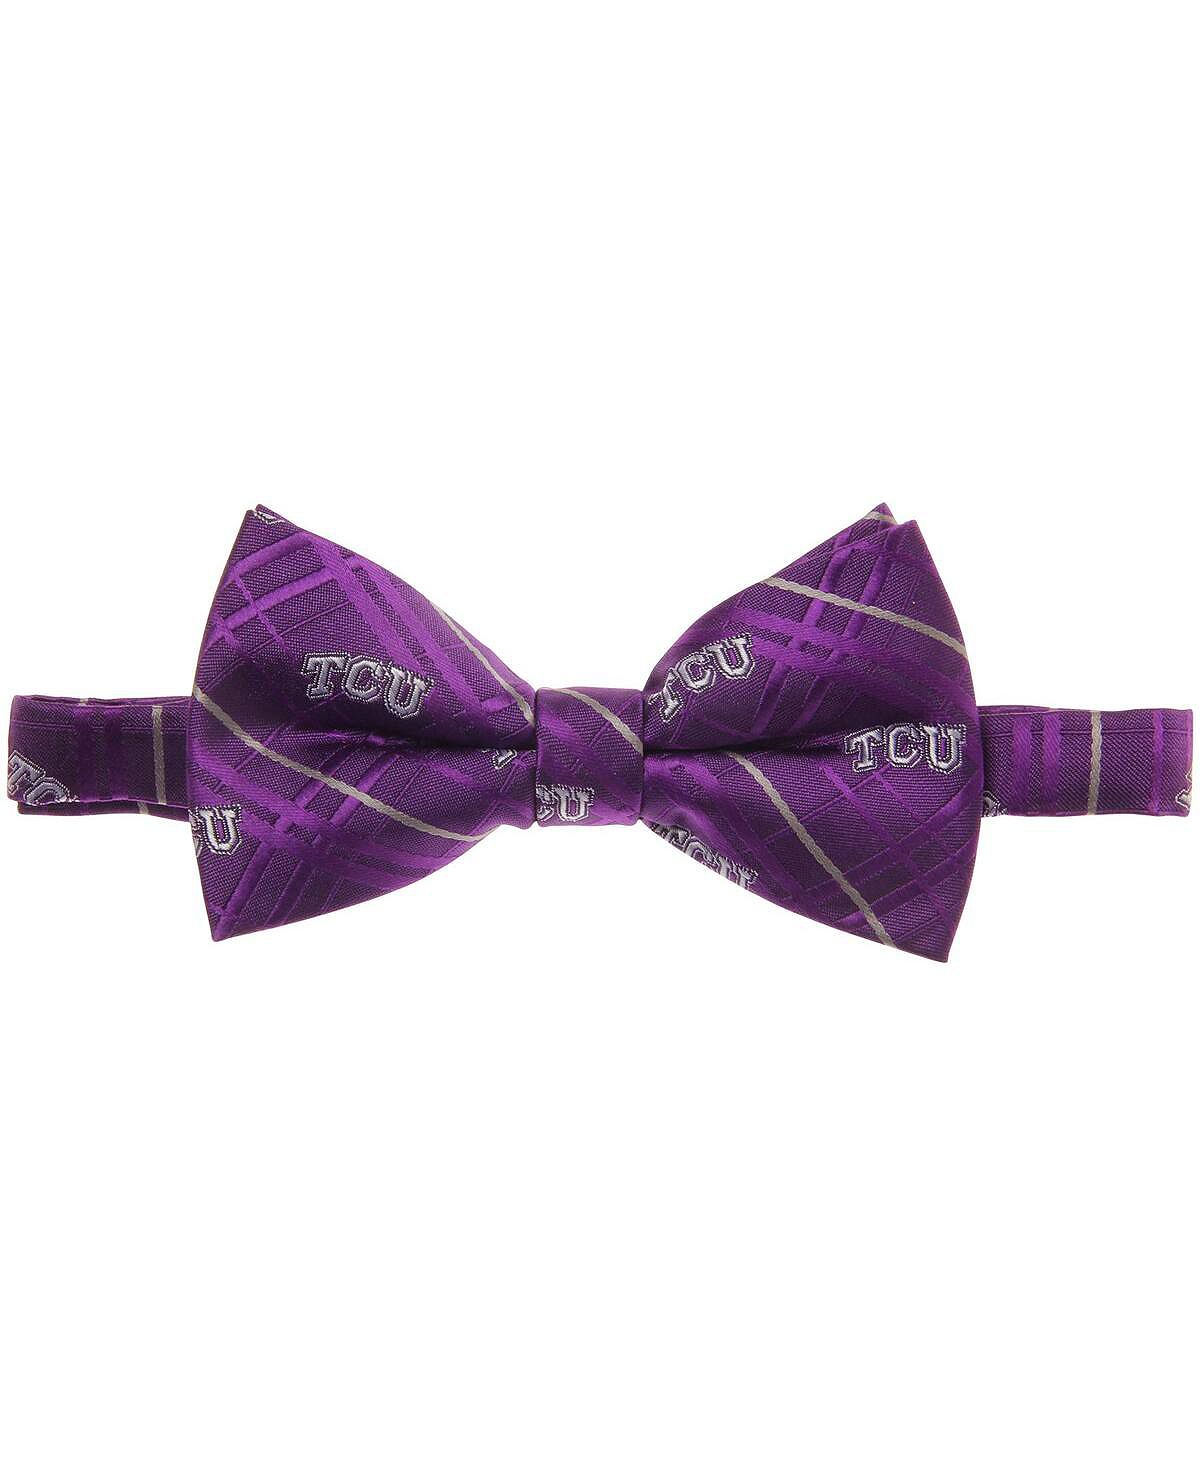 Мужской фиолетовый оксфордский галстук-бабочка TCU Horned Frogs Eagles Wings